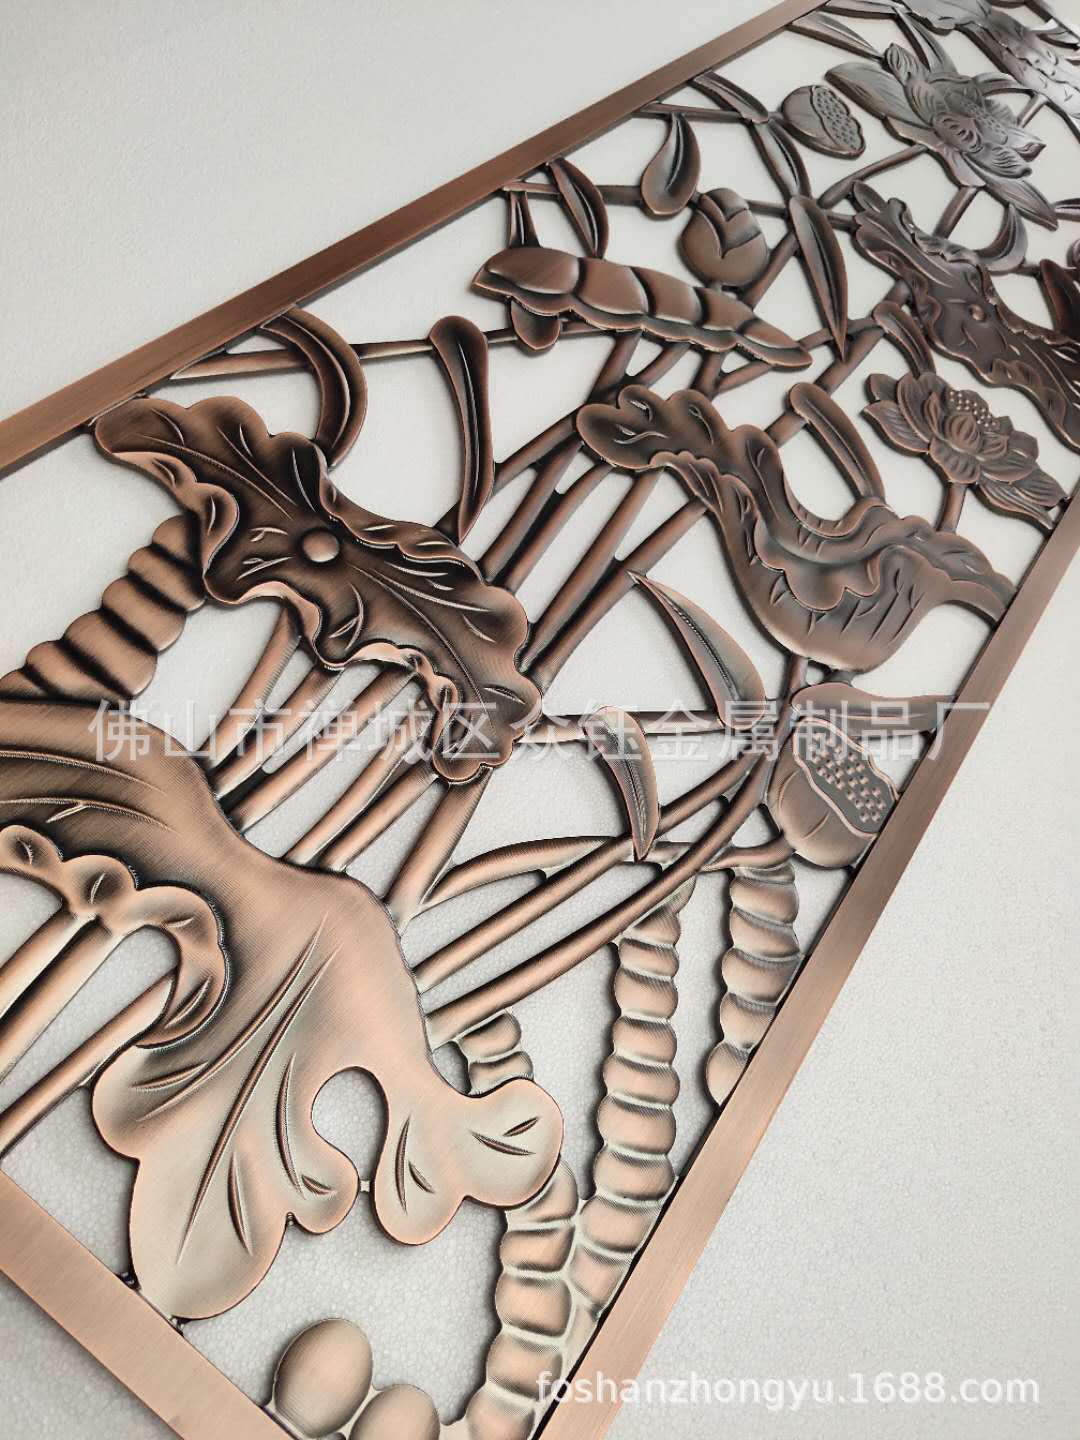 厂家直销 铝艺镀铜双面浮雕屏风 3D立体浮雕更得业主心示例图3